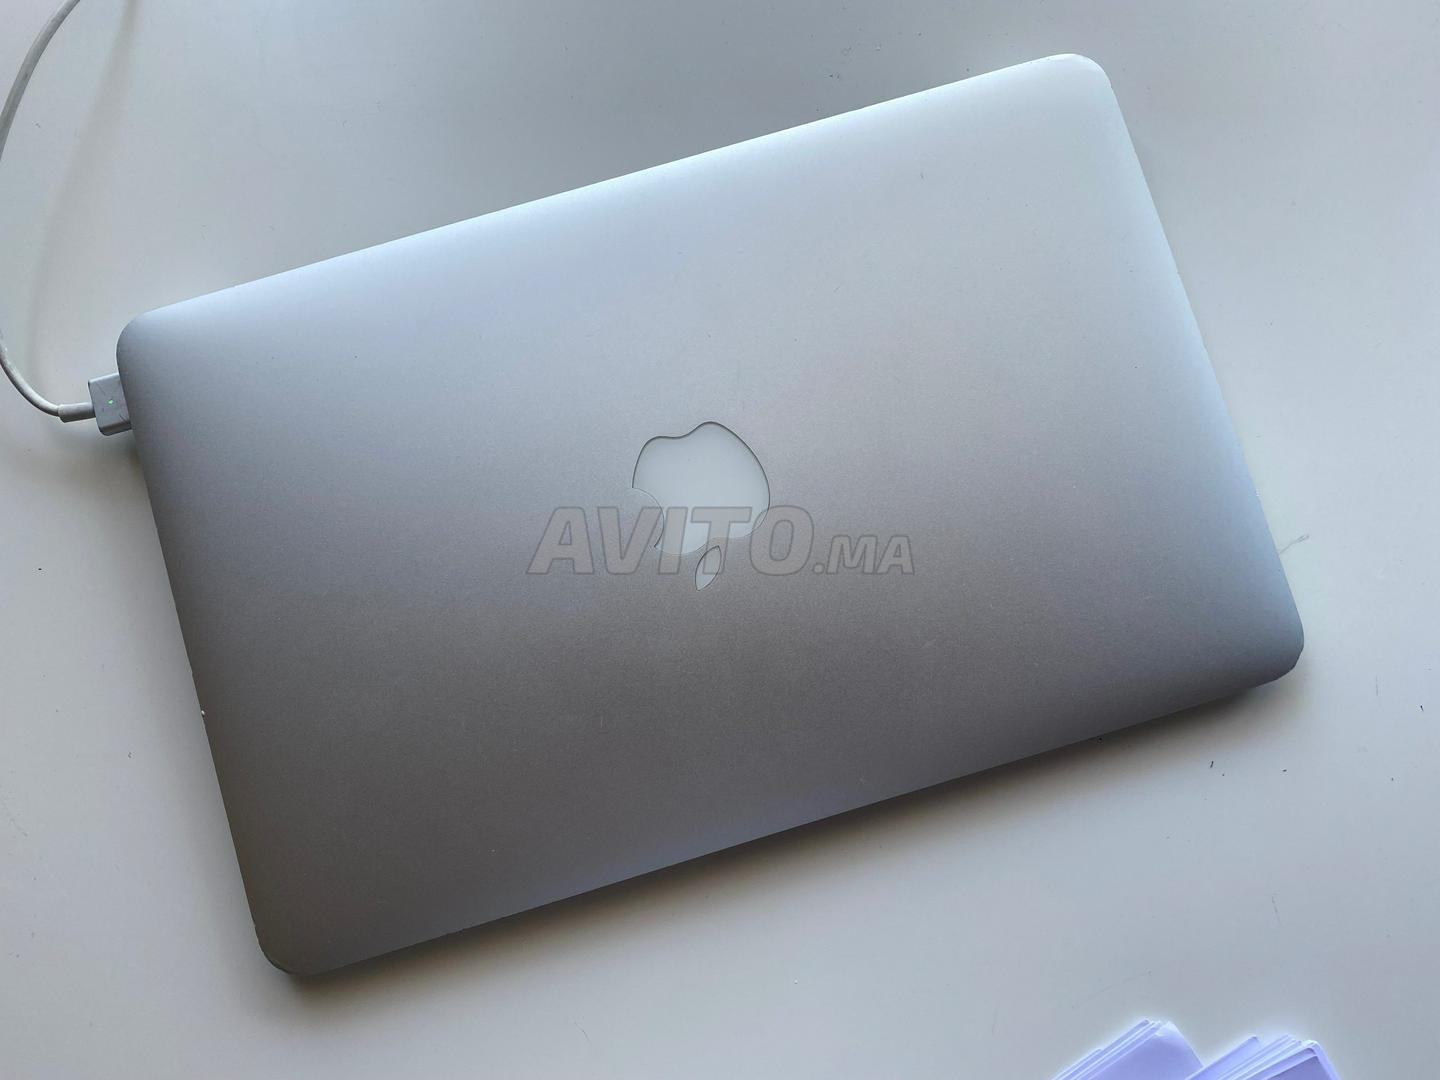 Macbook Air mi-2012 i5 11 pouces - 1